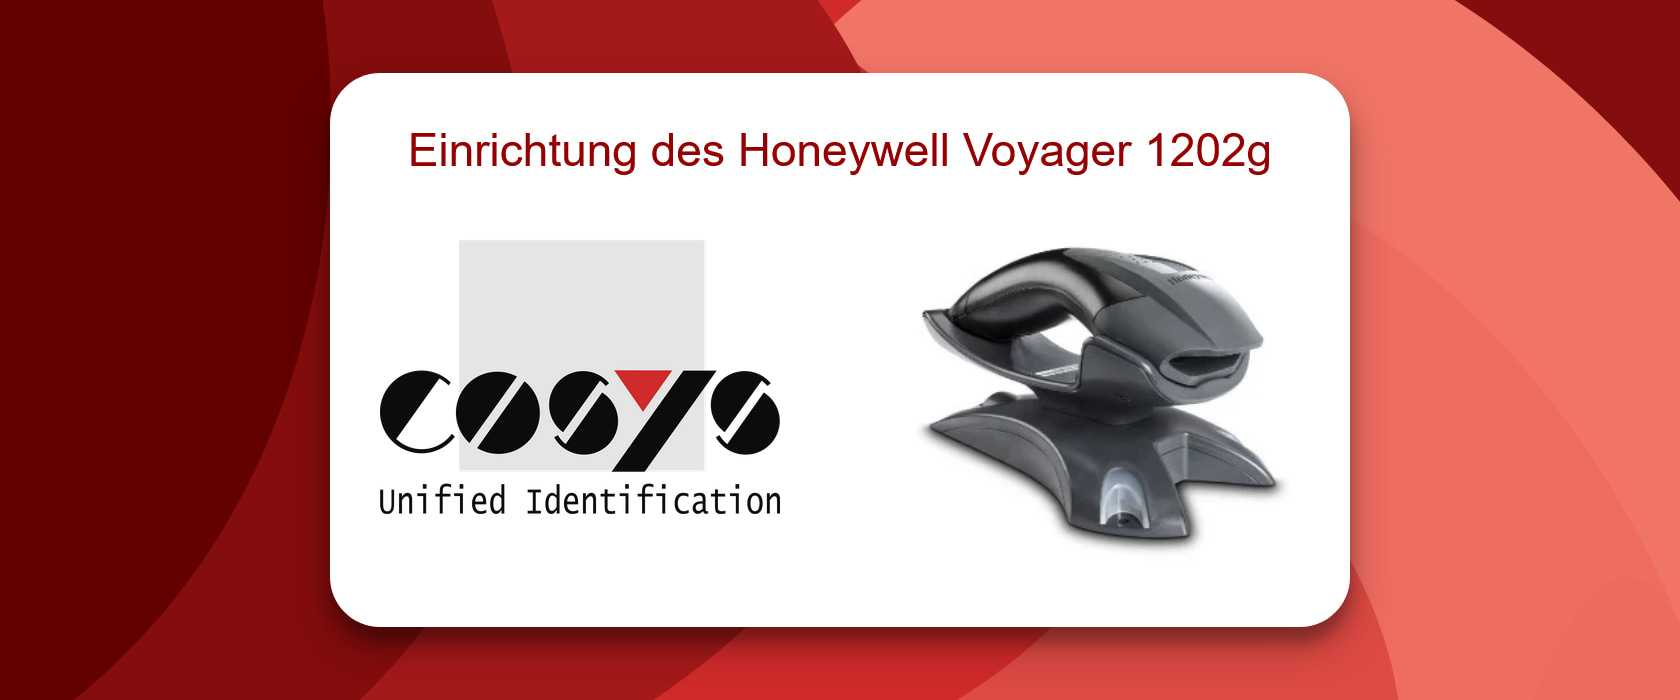 Honeywell Voyager 1202g Einrichtung